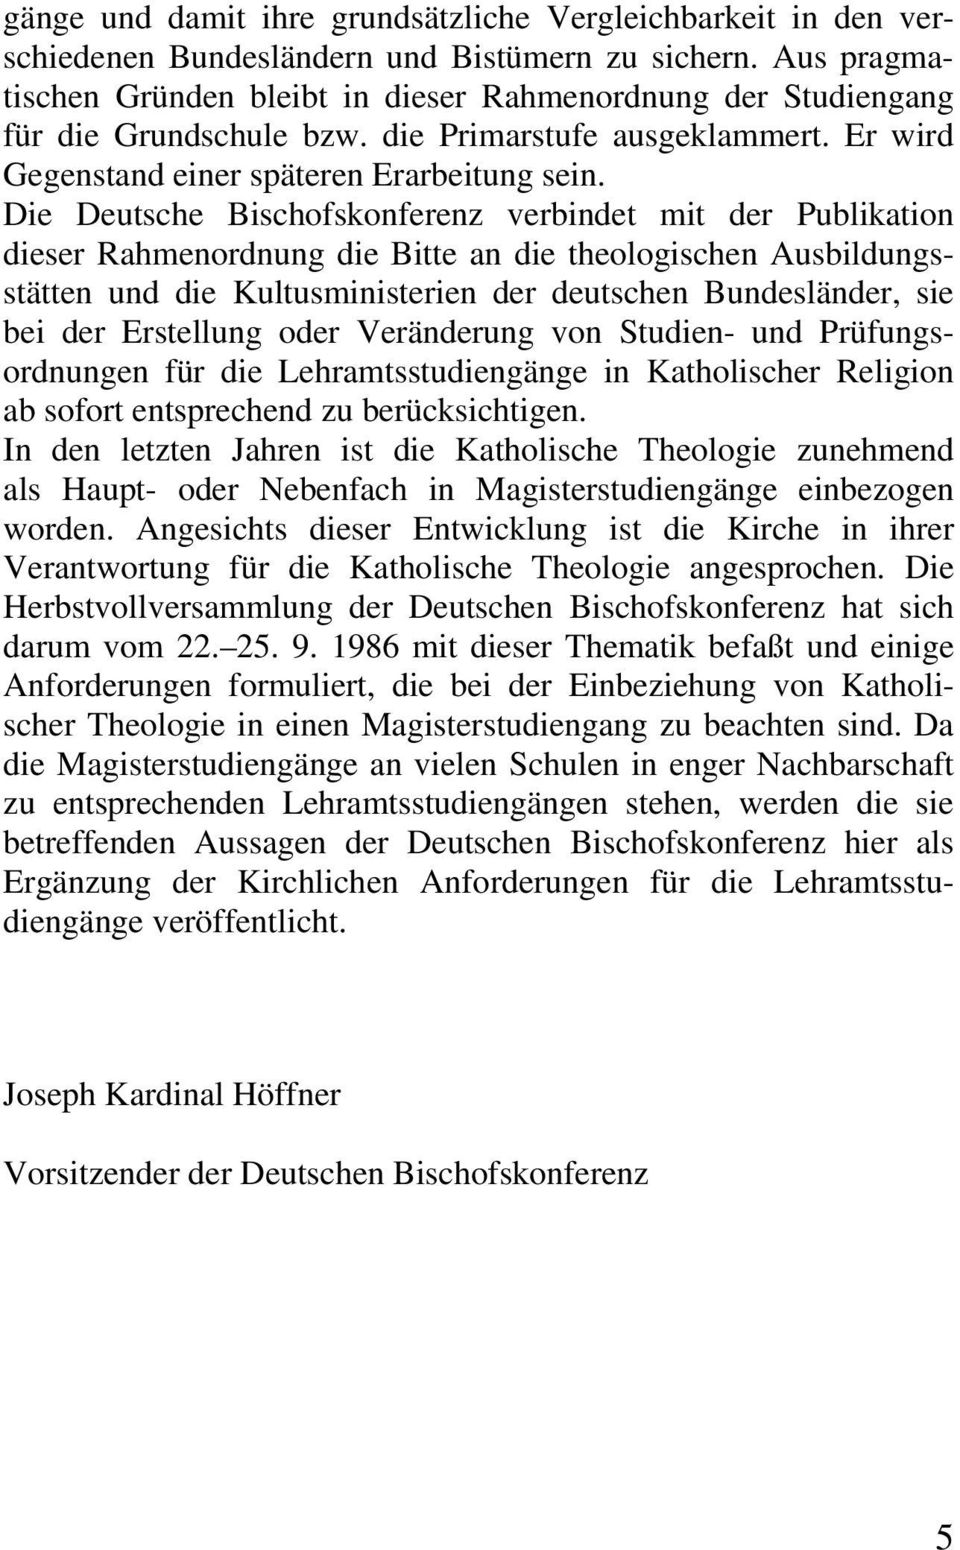 Die Deutsche Bischofskonferenz verbindet mit der Publikation dieser Rahmenordnung die Bitte an die theologischen Ausbildungsstätten und die Kultusministerien der deutschen Bundesländer, sie bei der